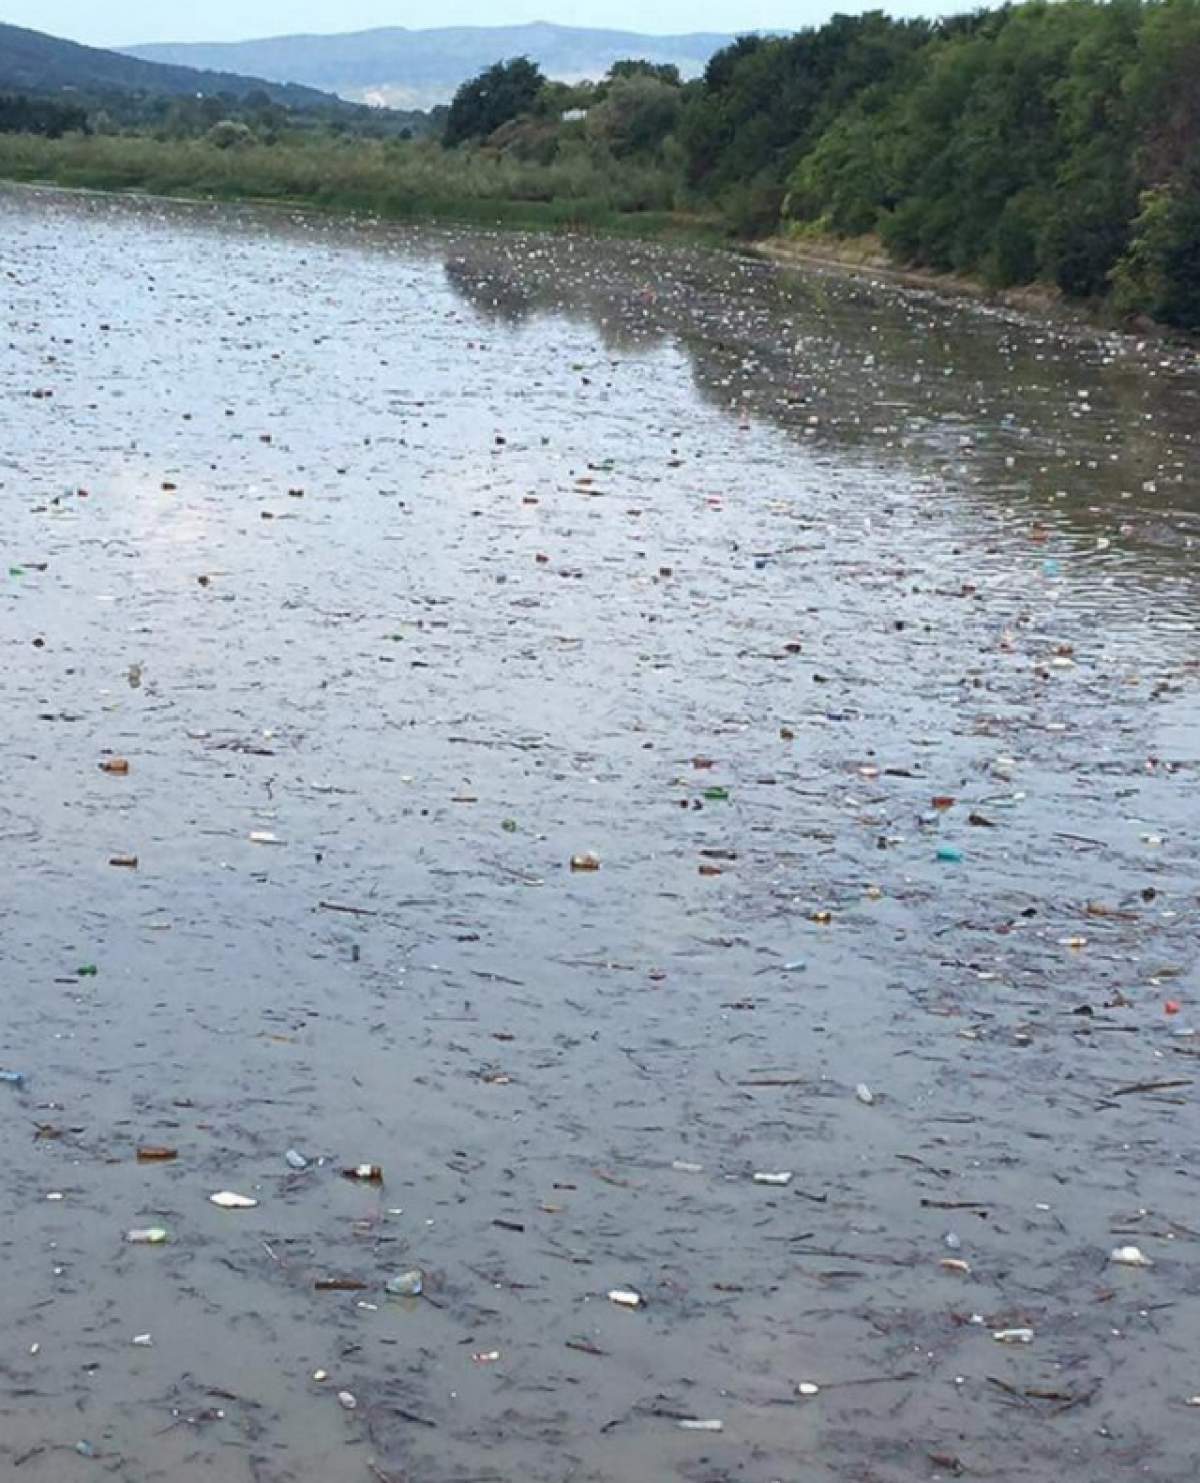 Imagini deplorabile pe râul Buzău!  Mii de gunoaie plutesc pe apă